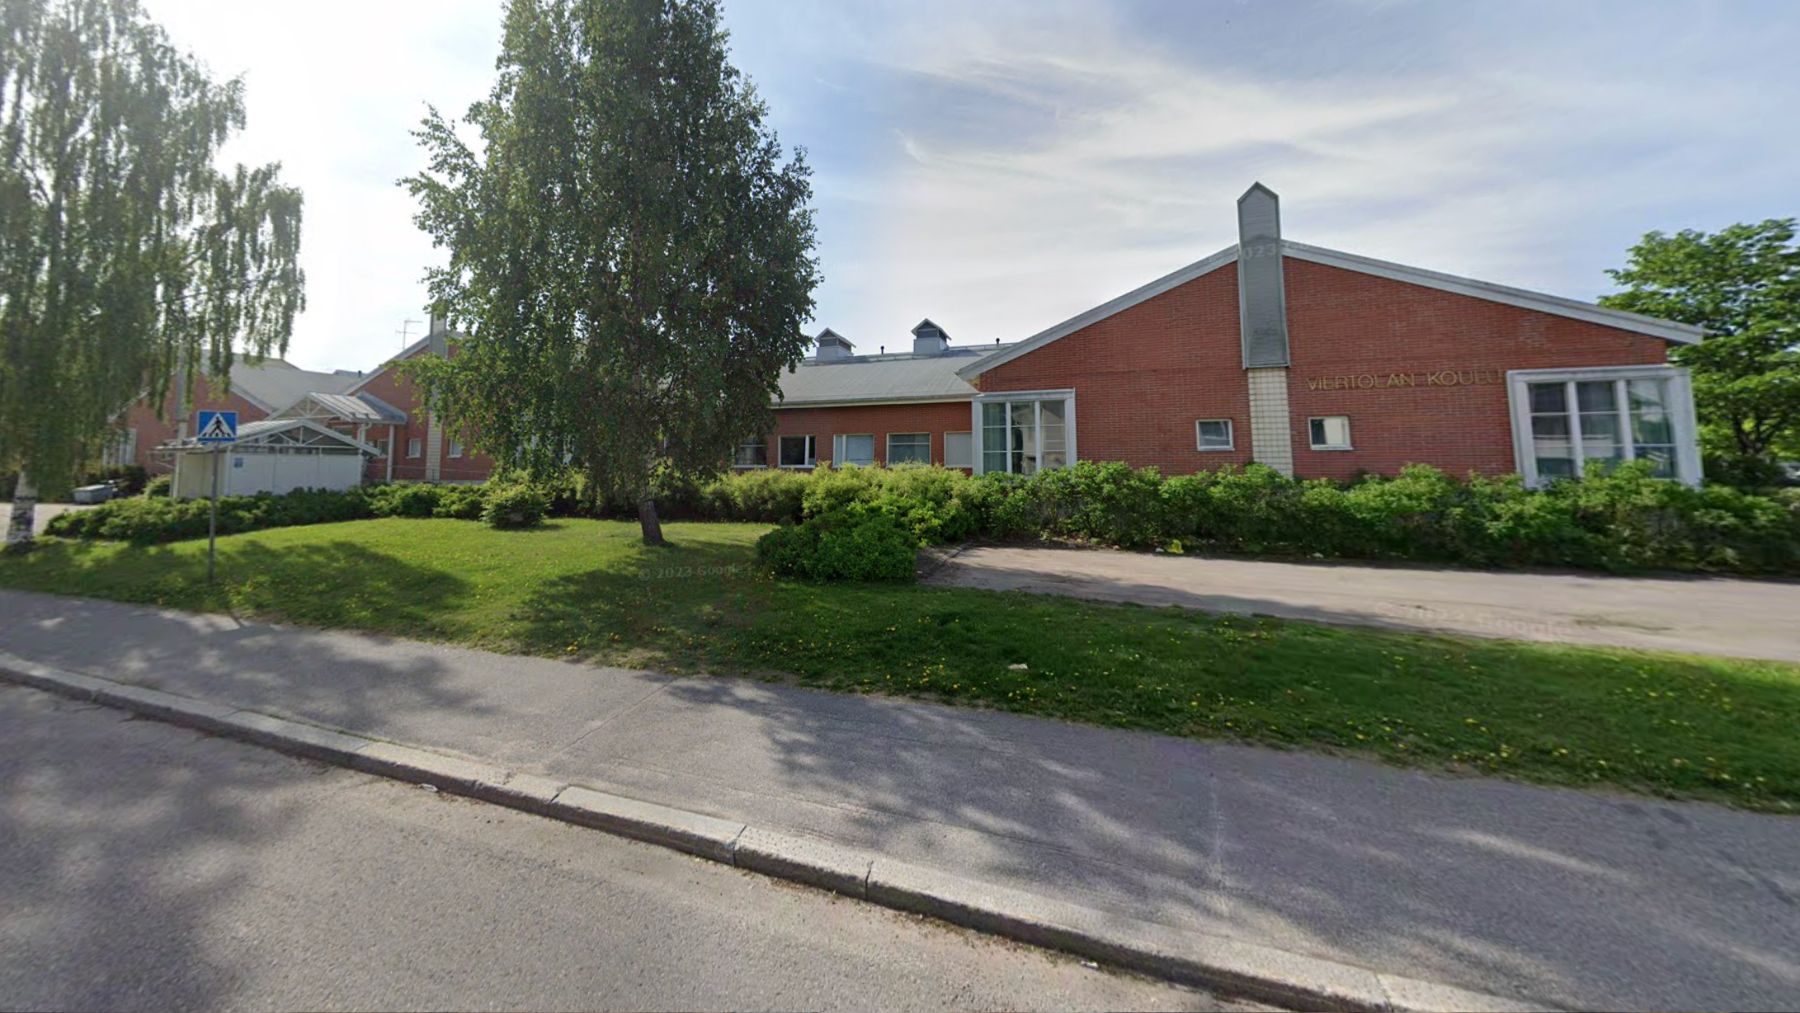 Escuela de Vantaa, en el distrito de Viertola. (Google Maps)